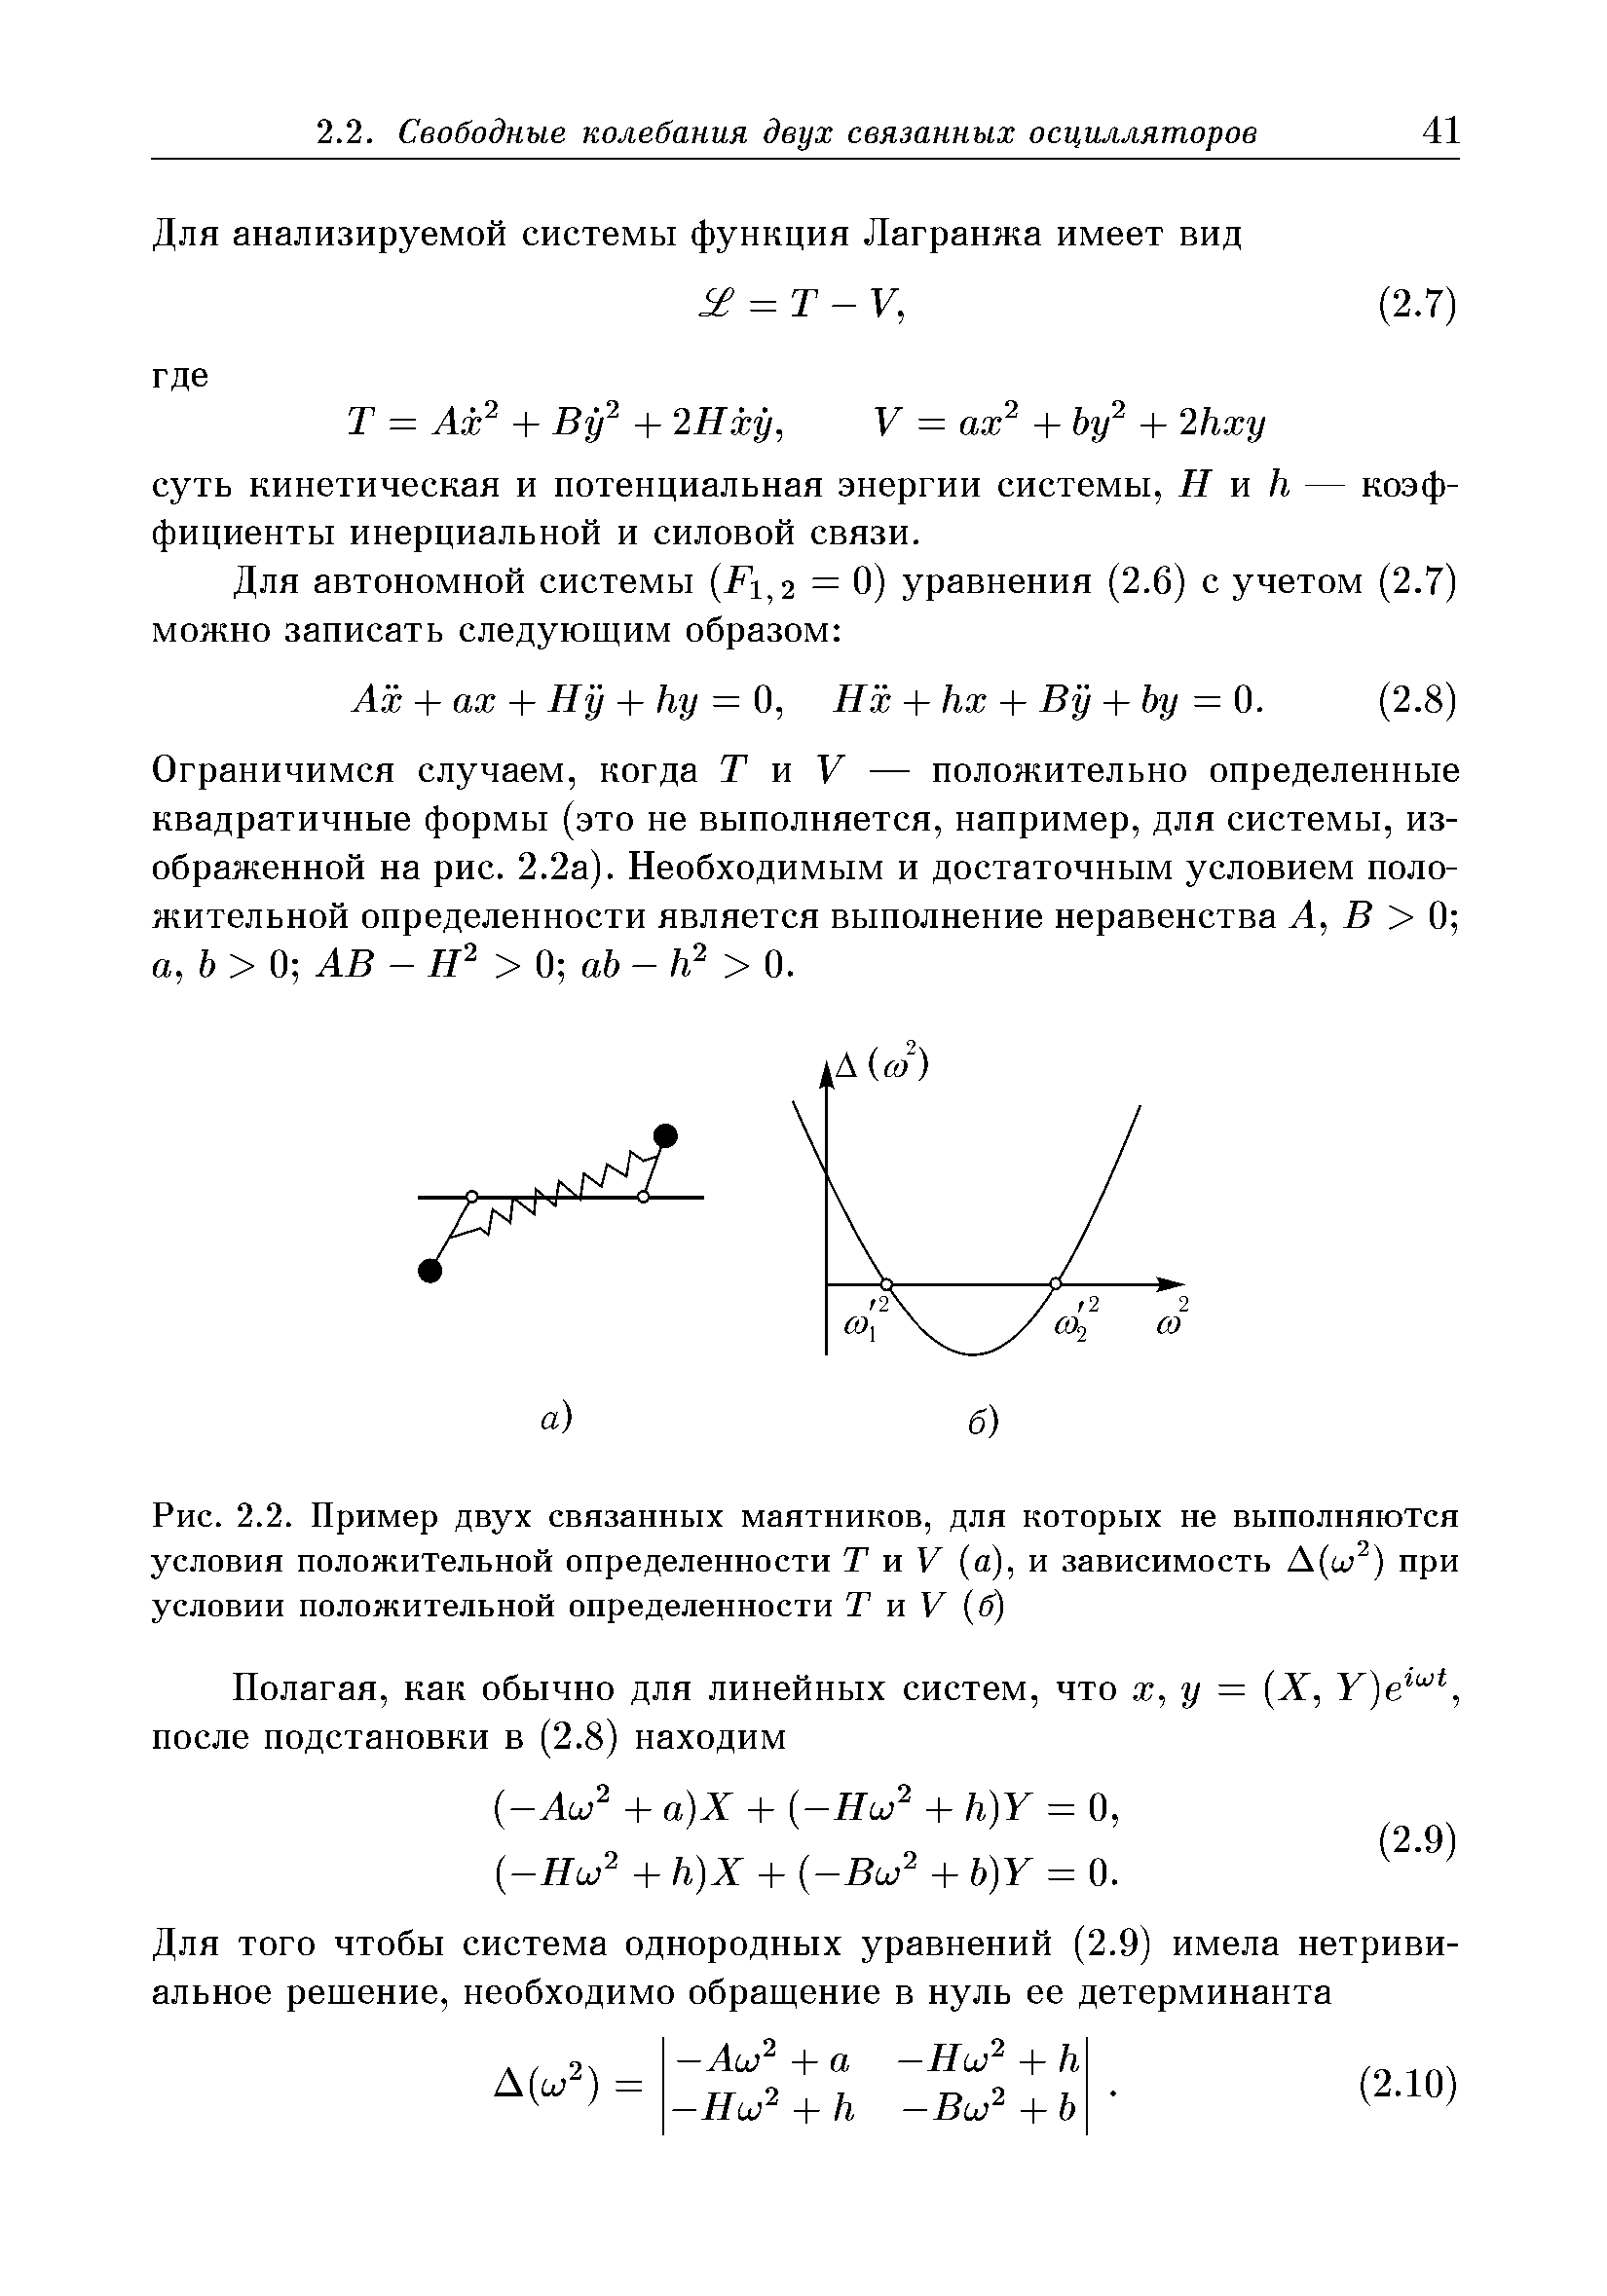 Рис. 2.2. Пример двух <a href="/info/364143">связанных маятников</a>, для которых не выполняются условия положительной определенности Т и V (а), и зависимость при
